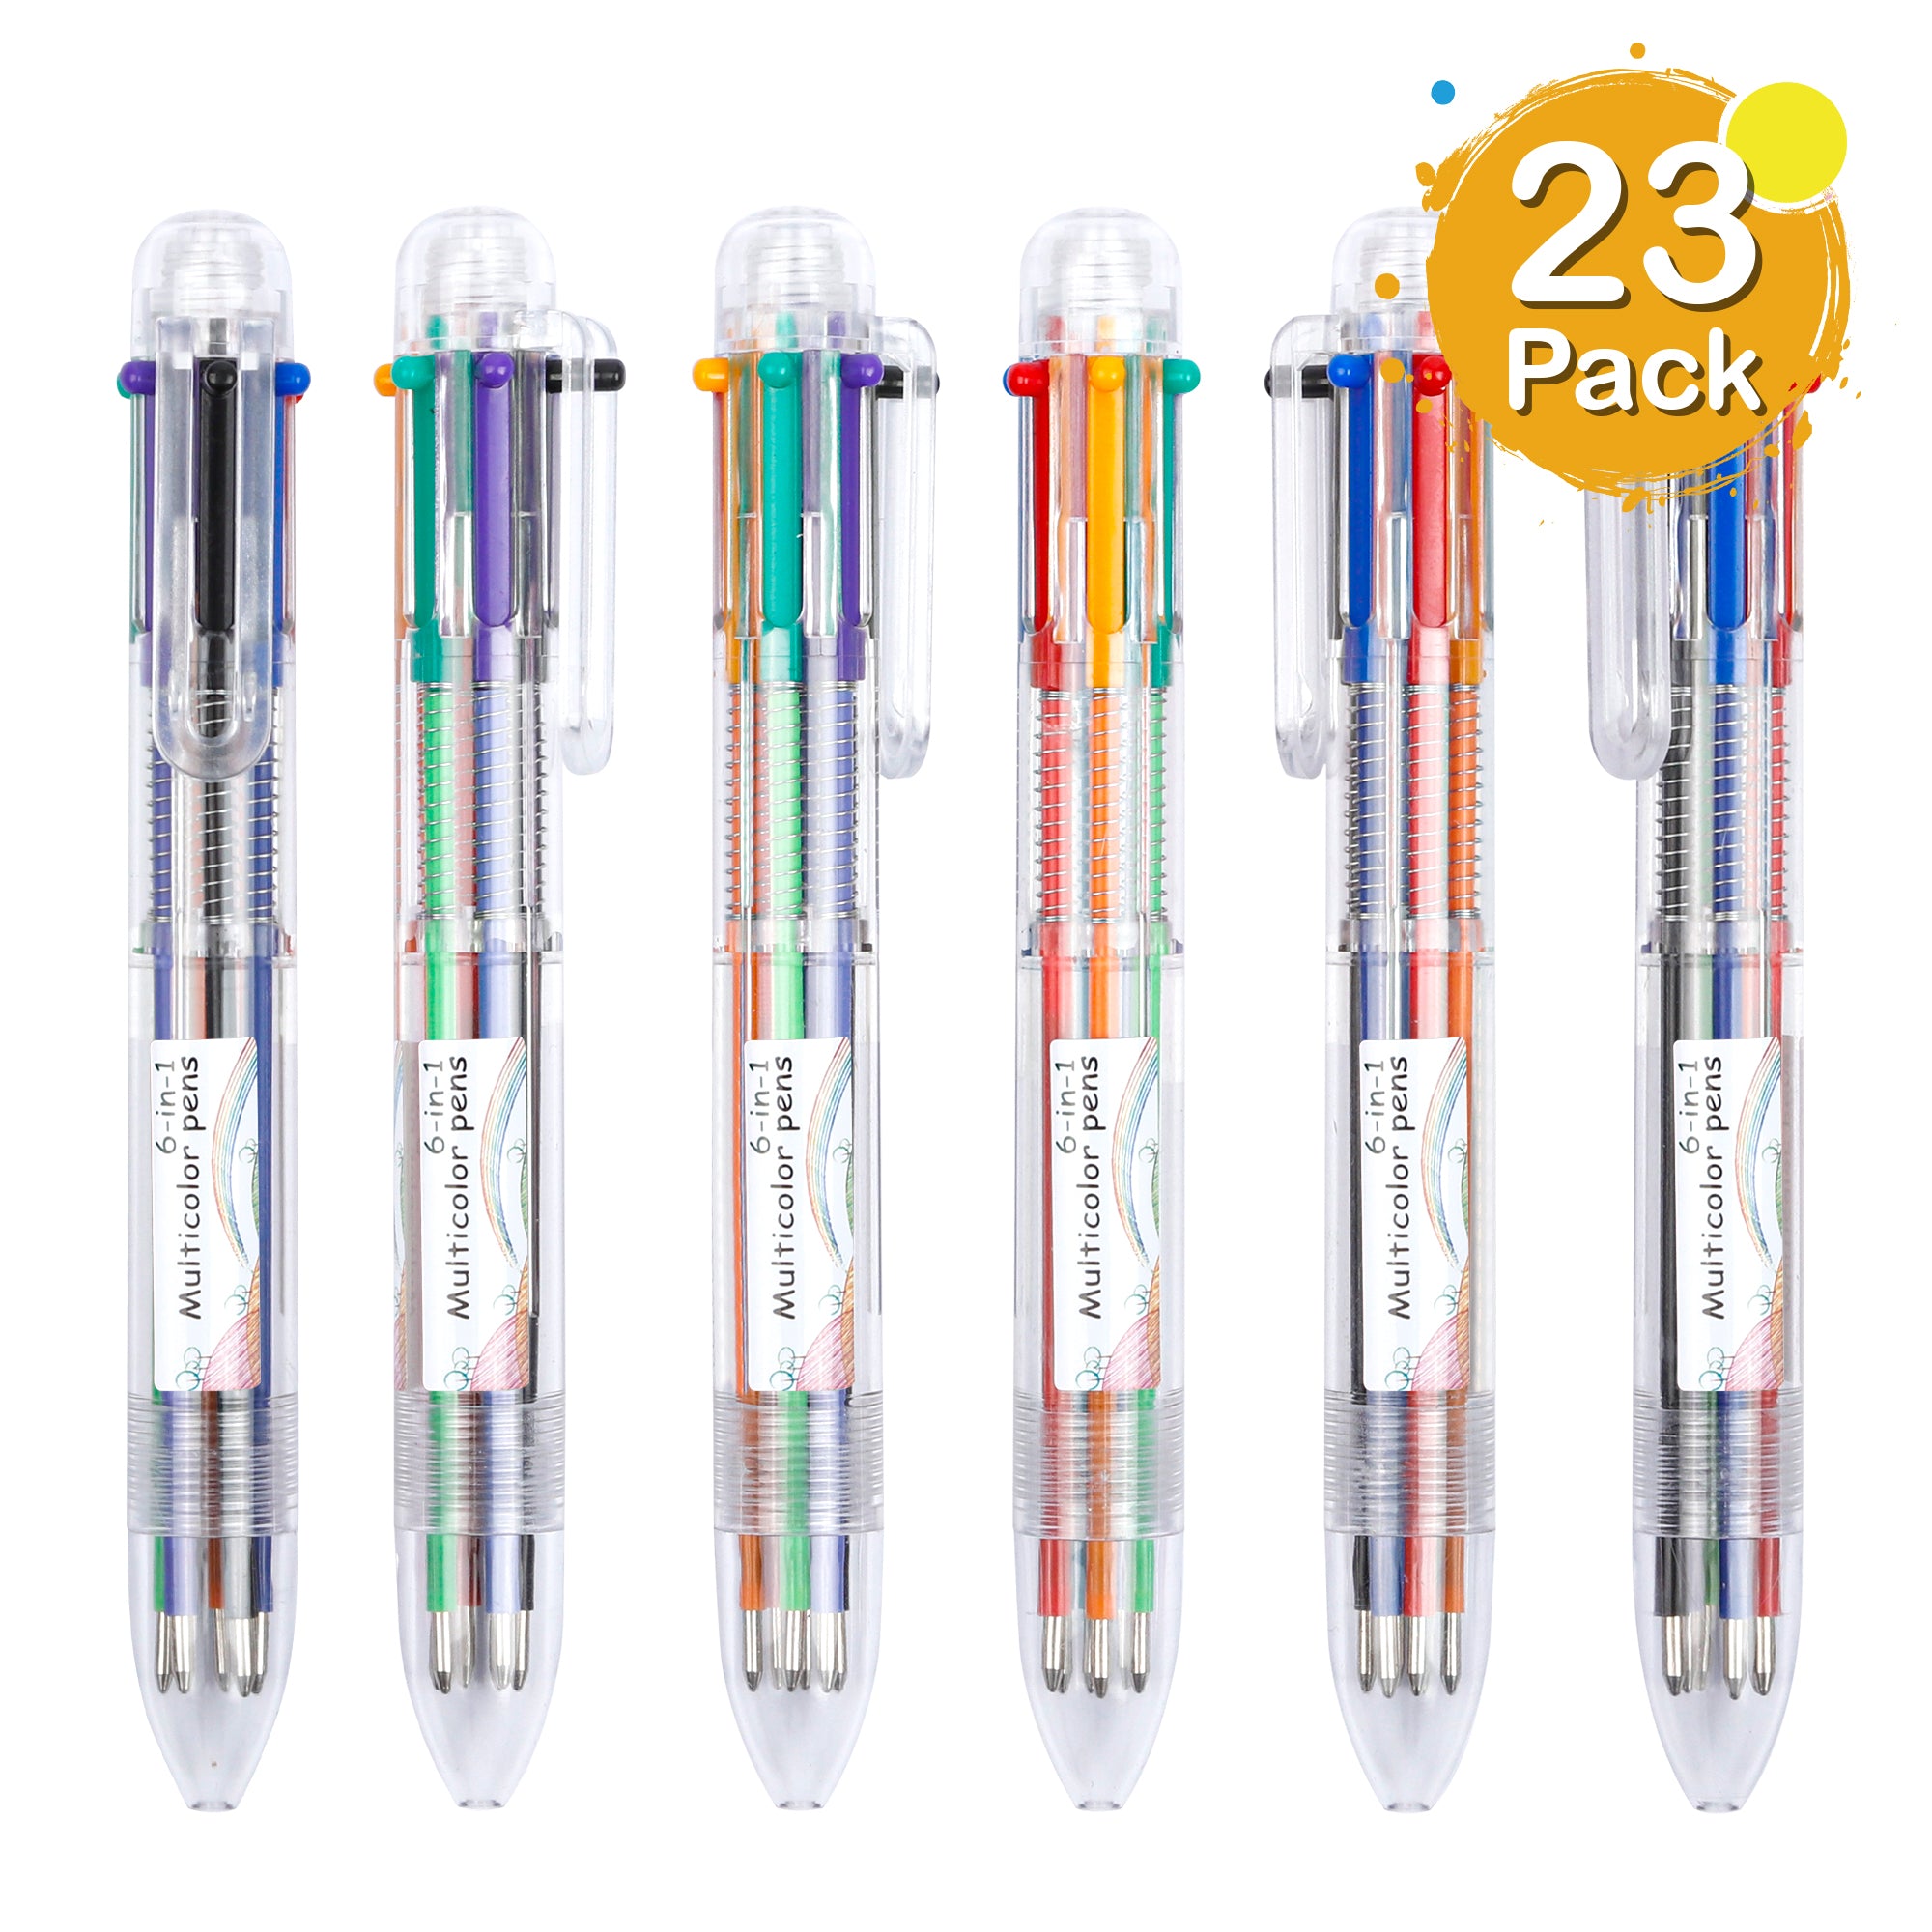 Shuttle Art Multicolor Pen